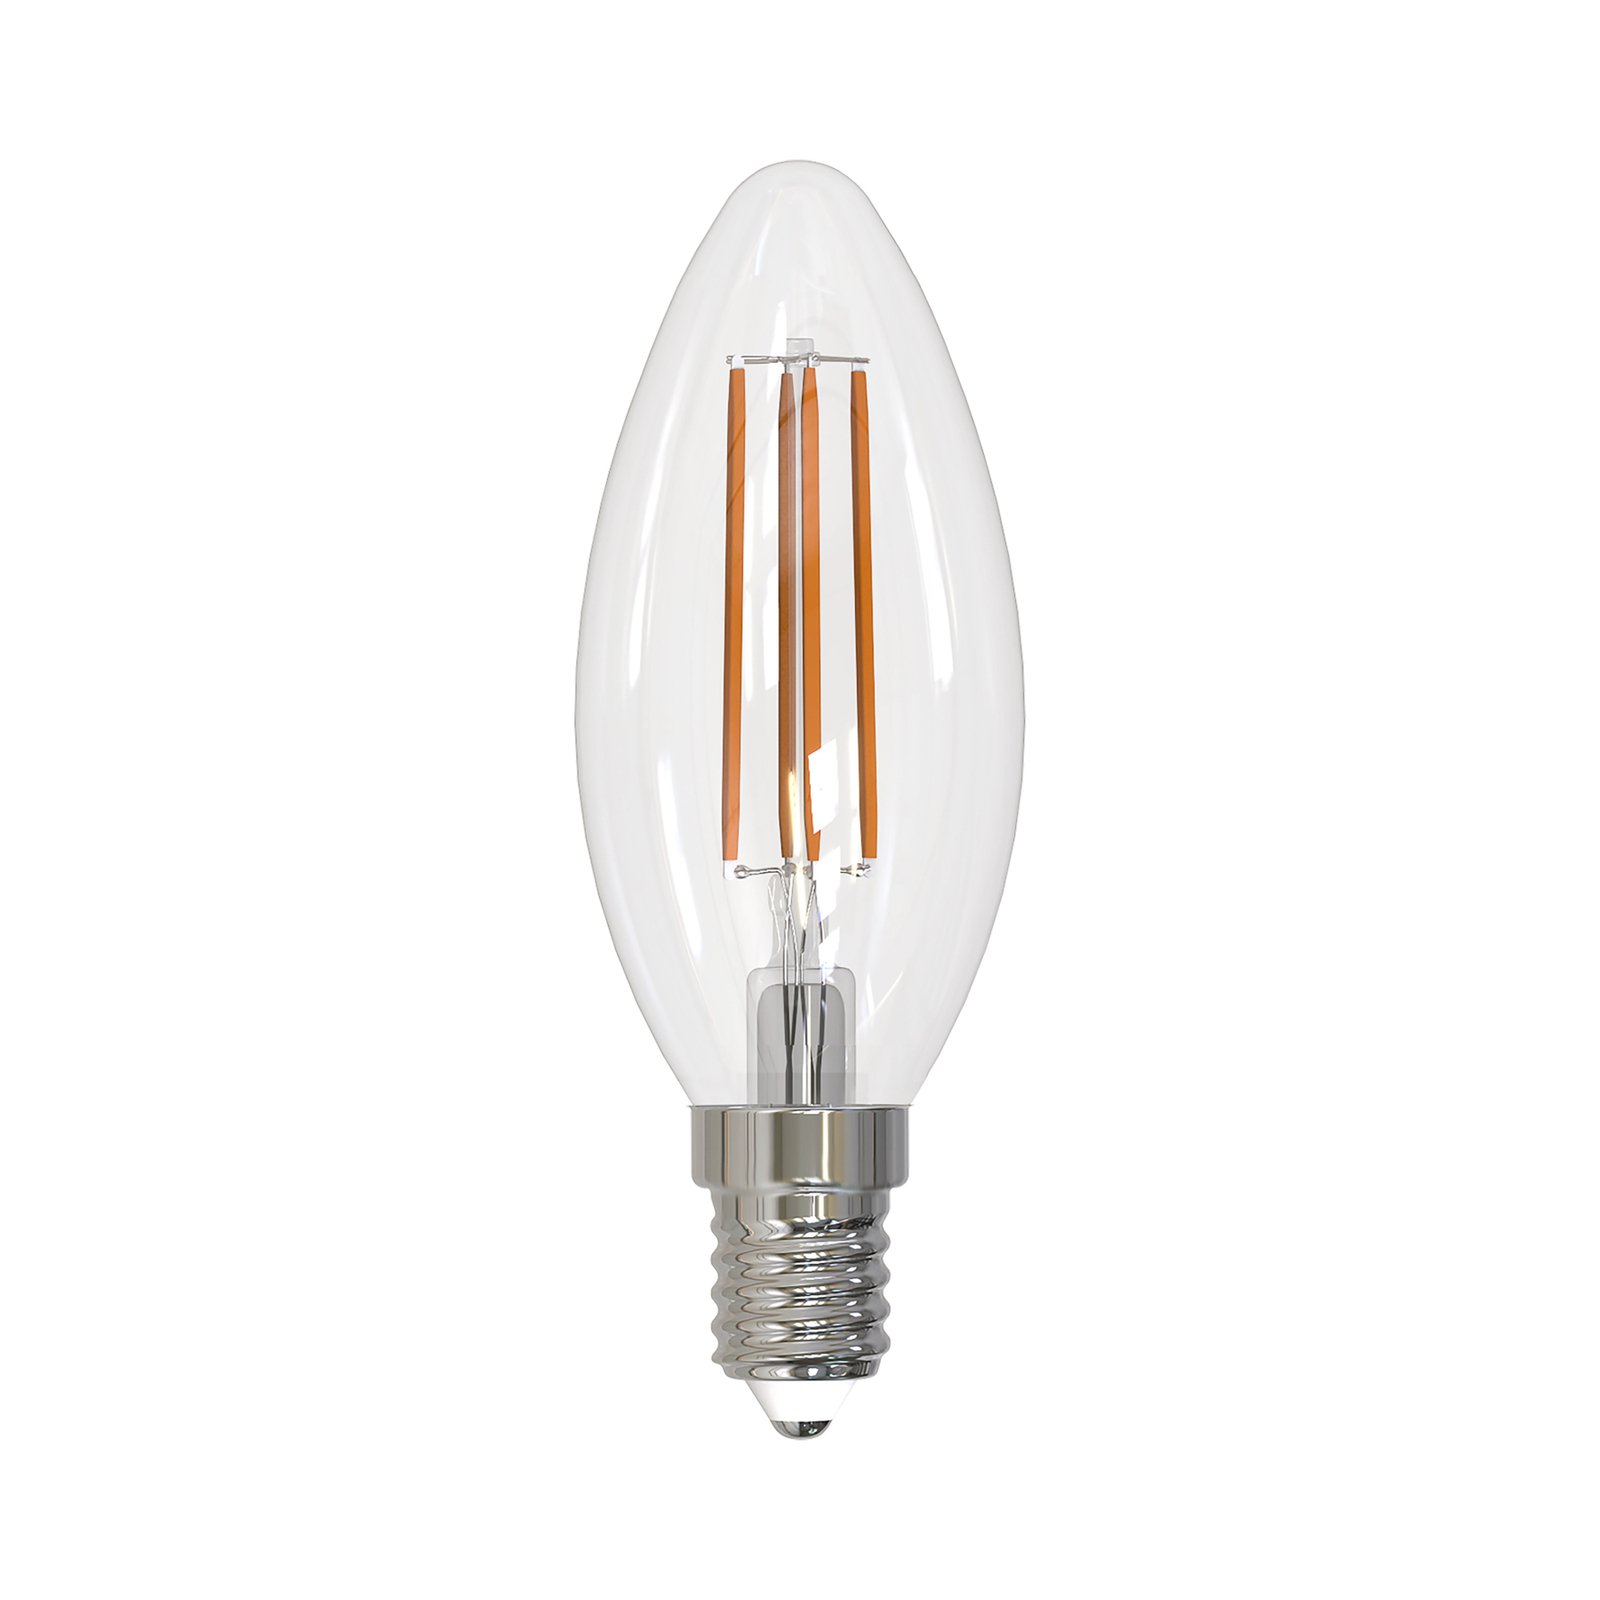 Arcchio LED žarulja filament E14 svijeća, set od 2 komada, 2700 K